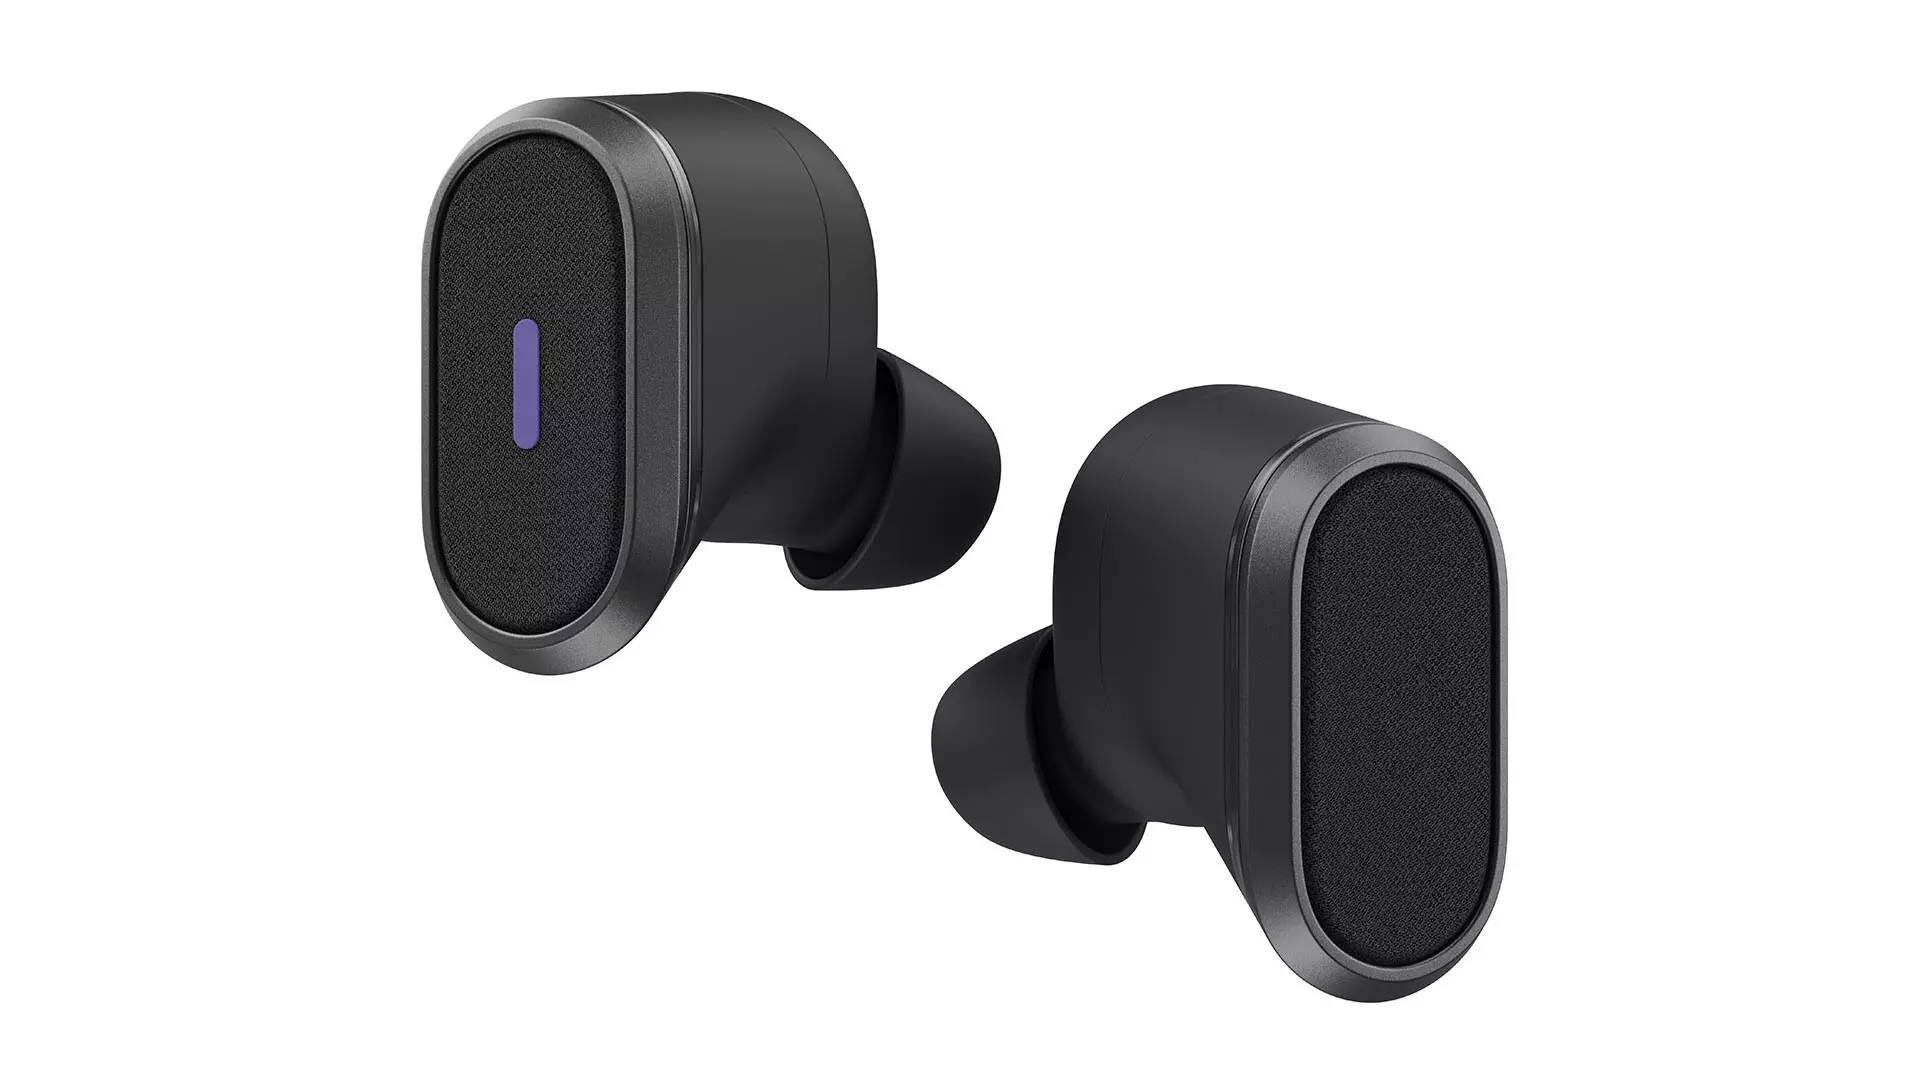 Vezeték nélküli Logitech fülhallgató, kifejezetten üzleti felhasználók számára